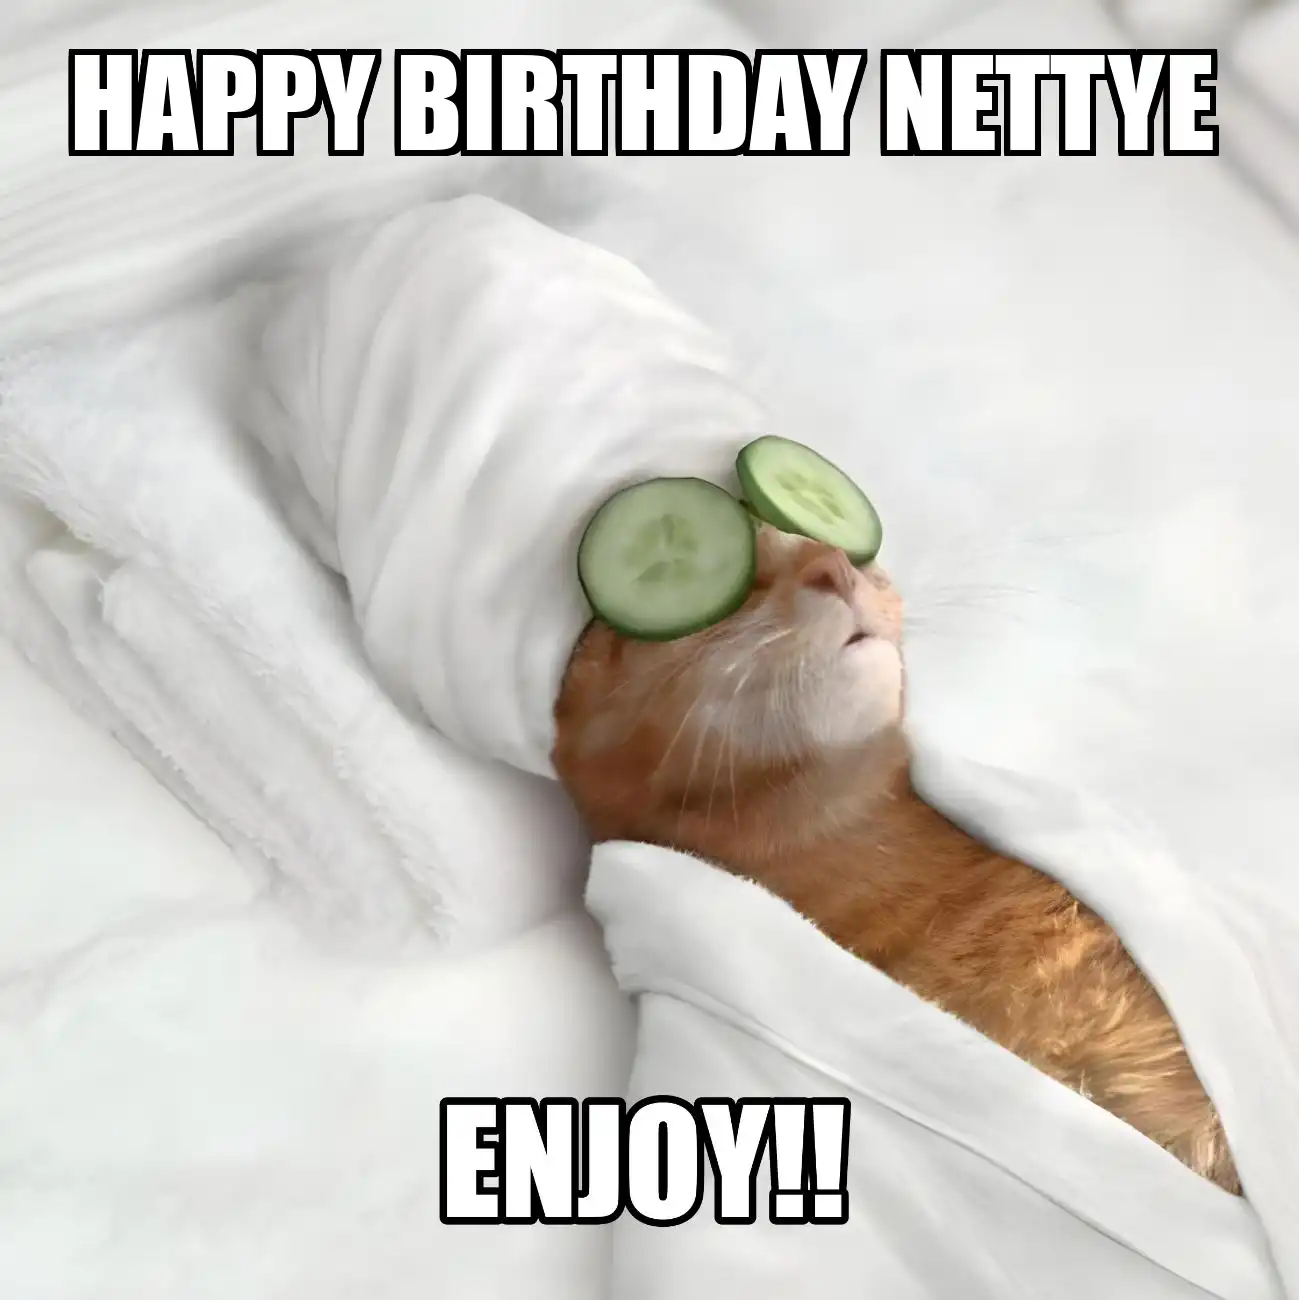 Happy Birthday Nettye Enjoy Cat Meme